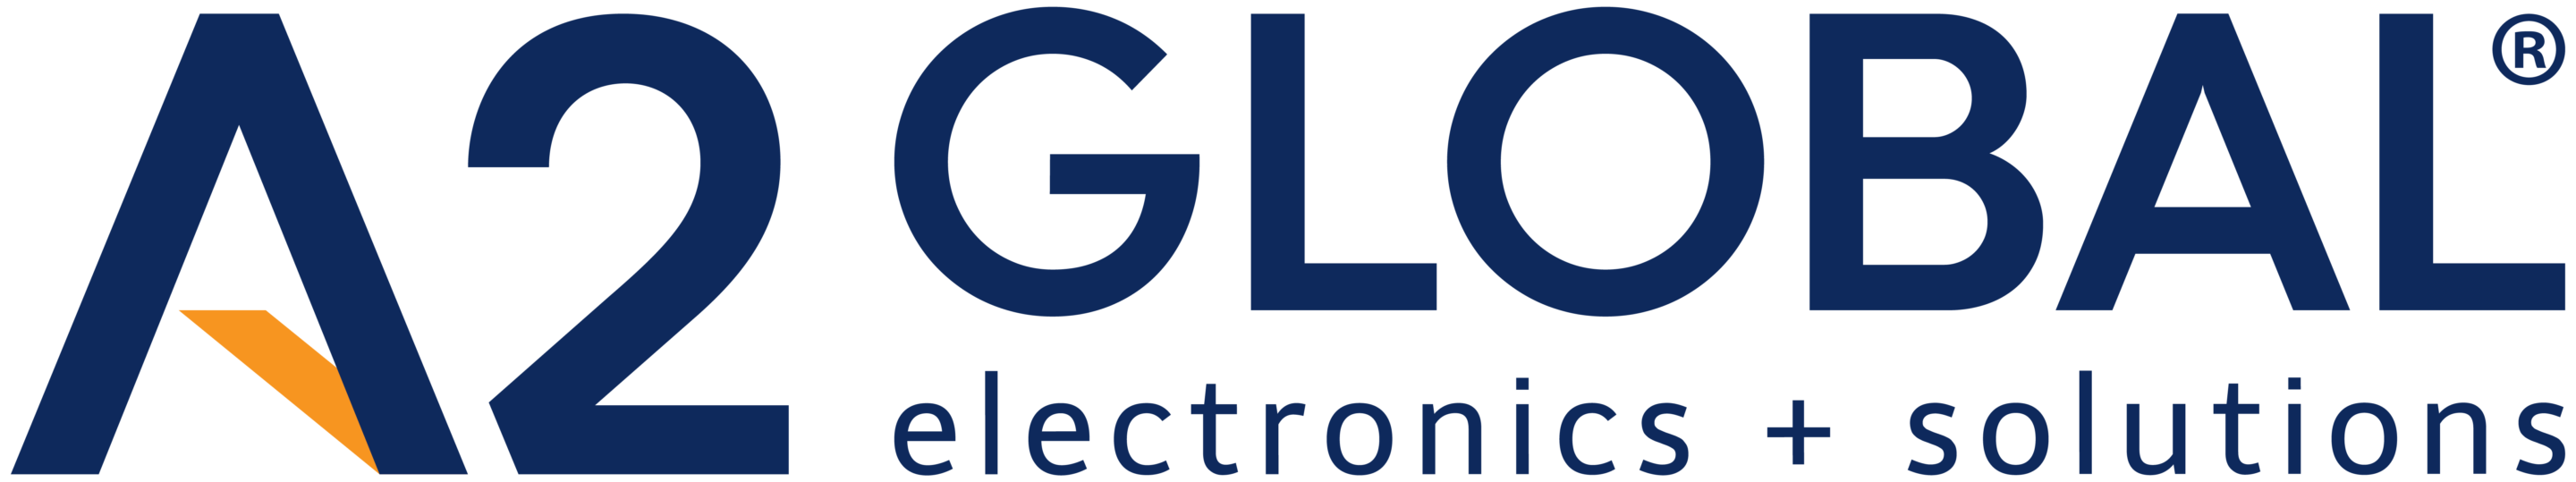 A2 Global Electronics